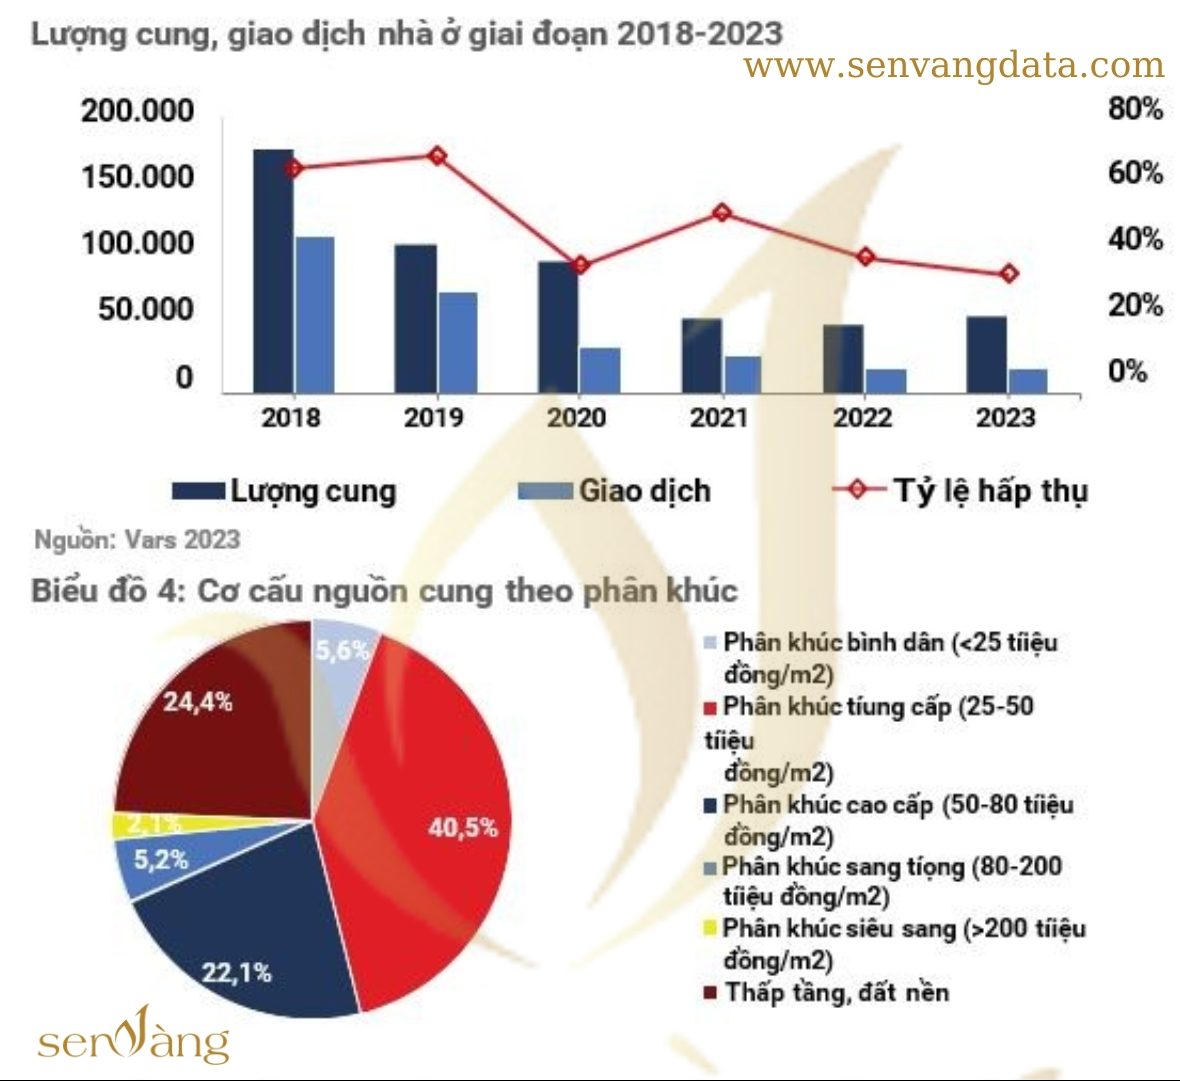 Lượng cung, giao dịch nhà ở giai đoạn 2018-2023 và cơ cấu nguồn cung theo phân khúc. Nguồn: Sen Vàng tổng hợp